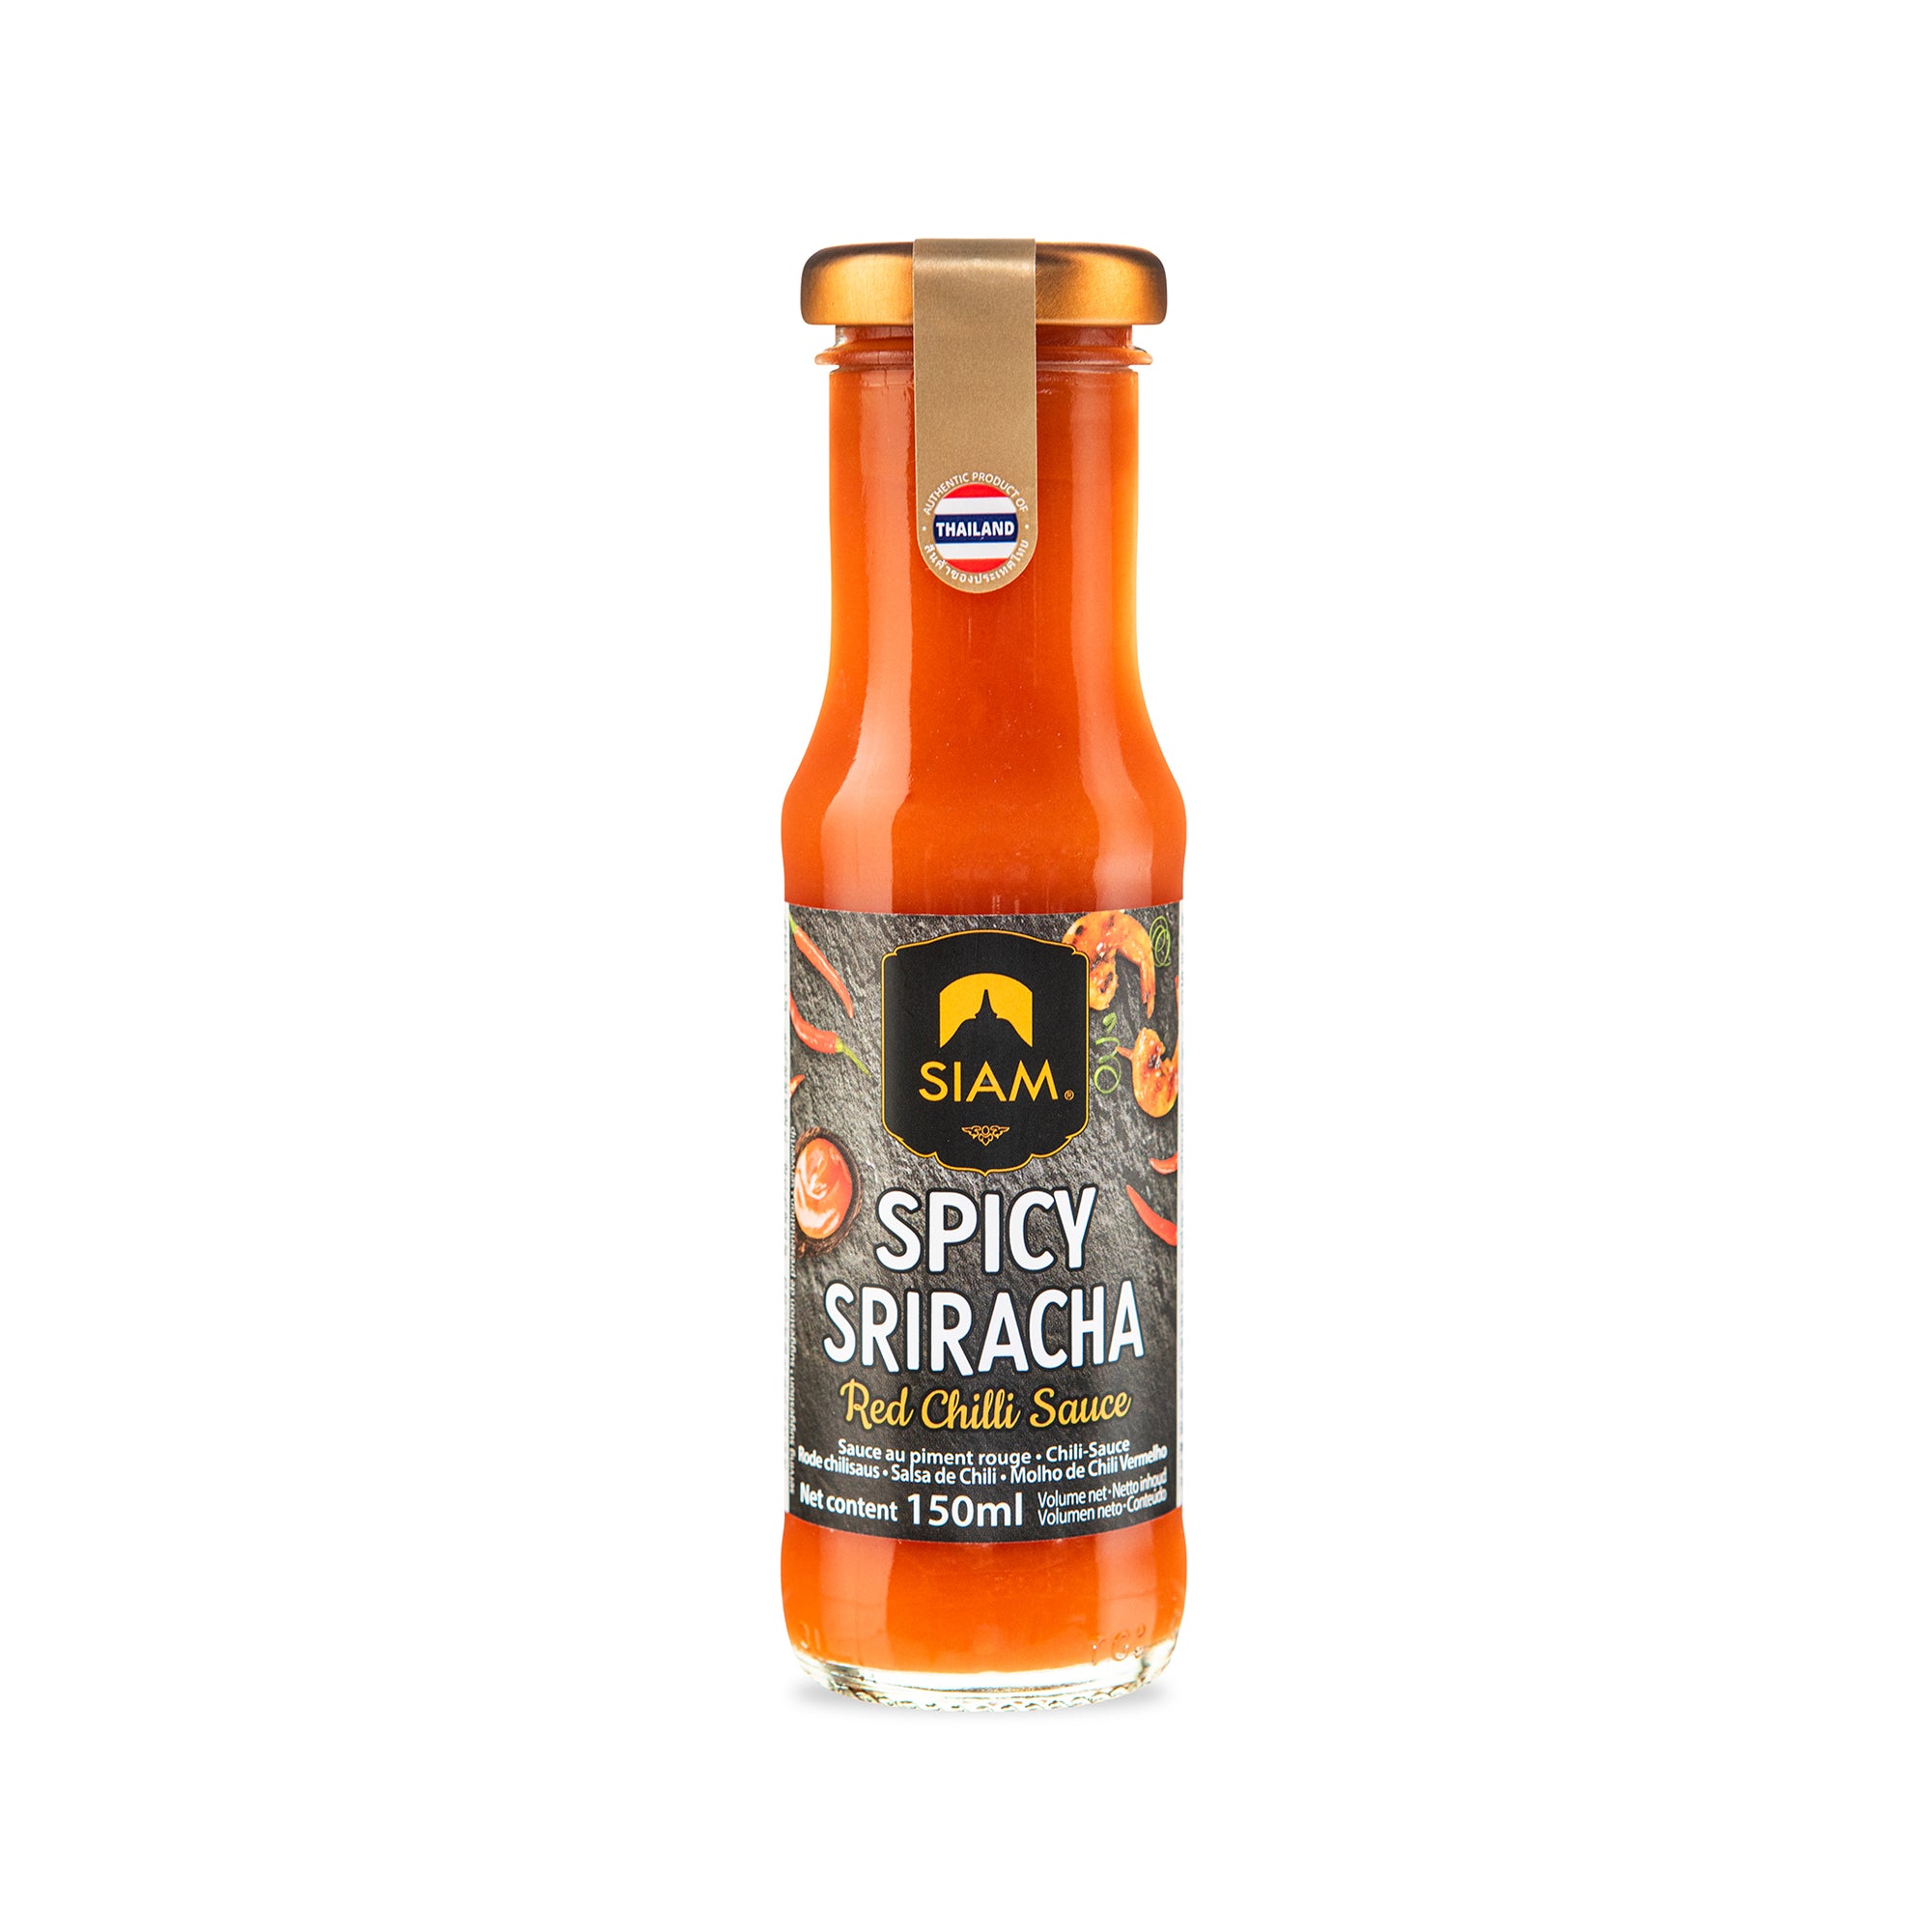 SIAM Spicy Sriracha Red Chilli Sauce, 5 fl oz (150 ml)